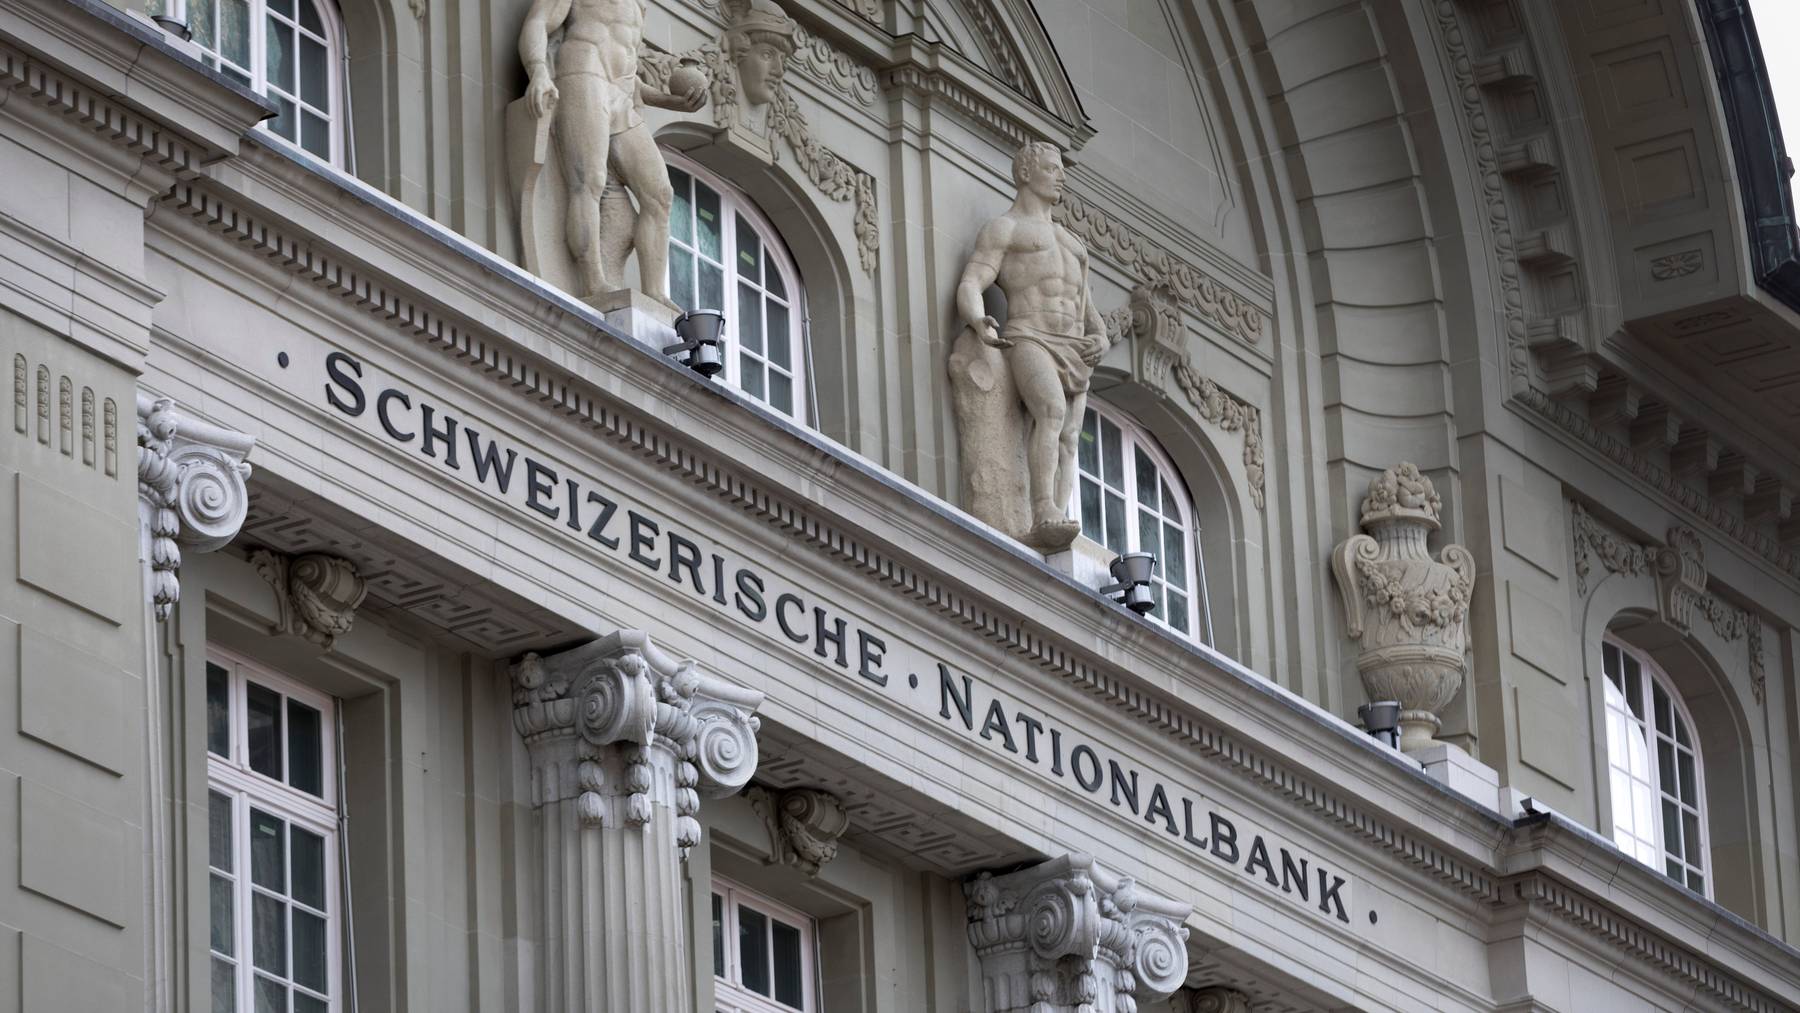 Die Schweizerische Nationalbank in Bern.